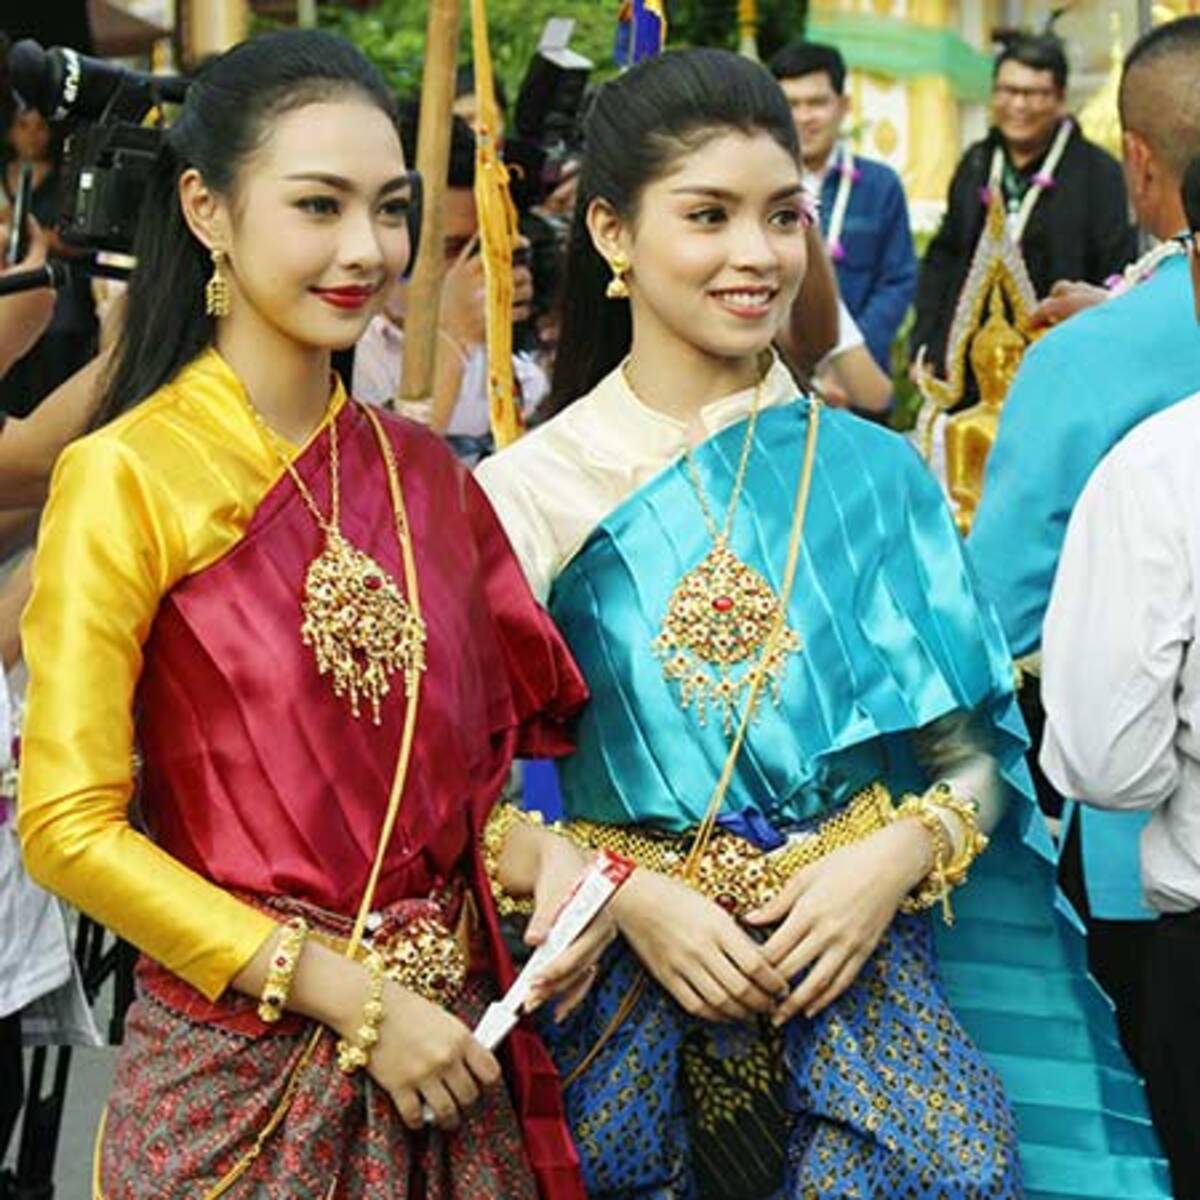 タイでセクシー民族衣装 シワーライ 大人気 日本人相手の風俗店でもコスプレが 18年7月12日 エキサイトニュース